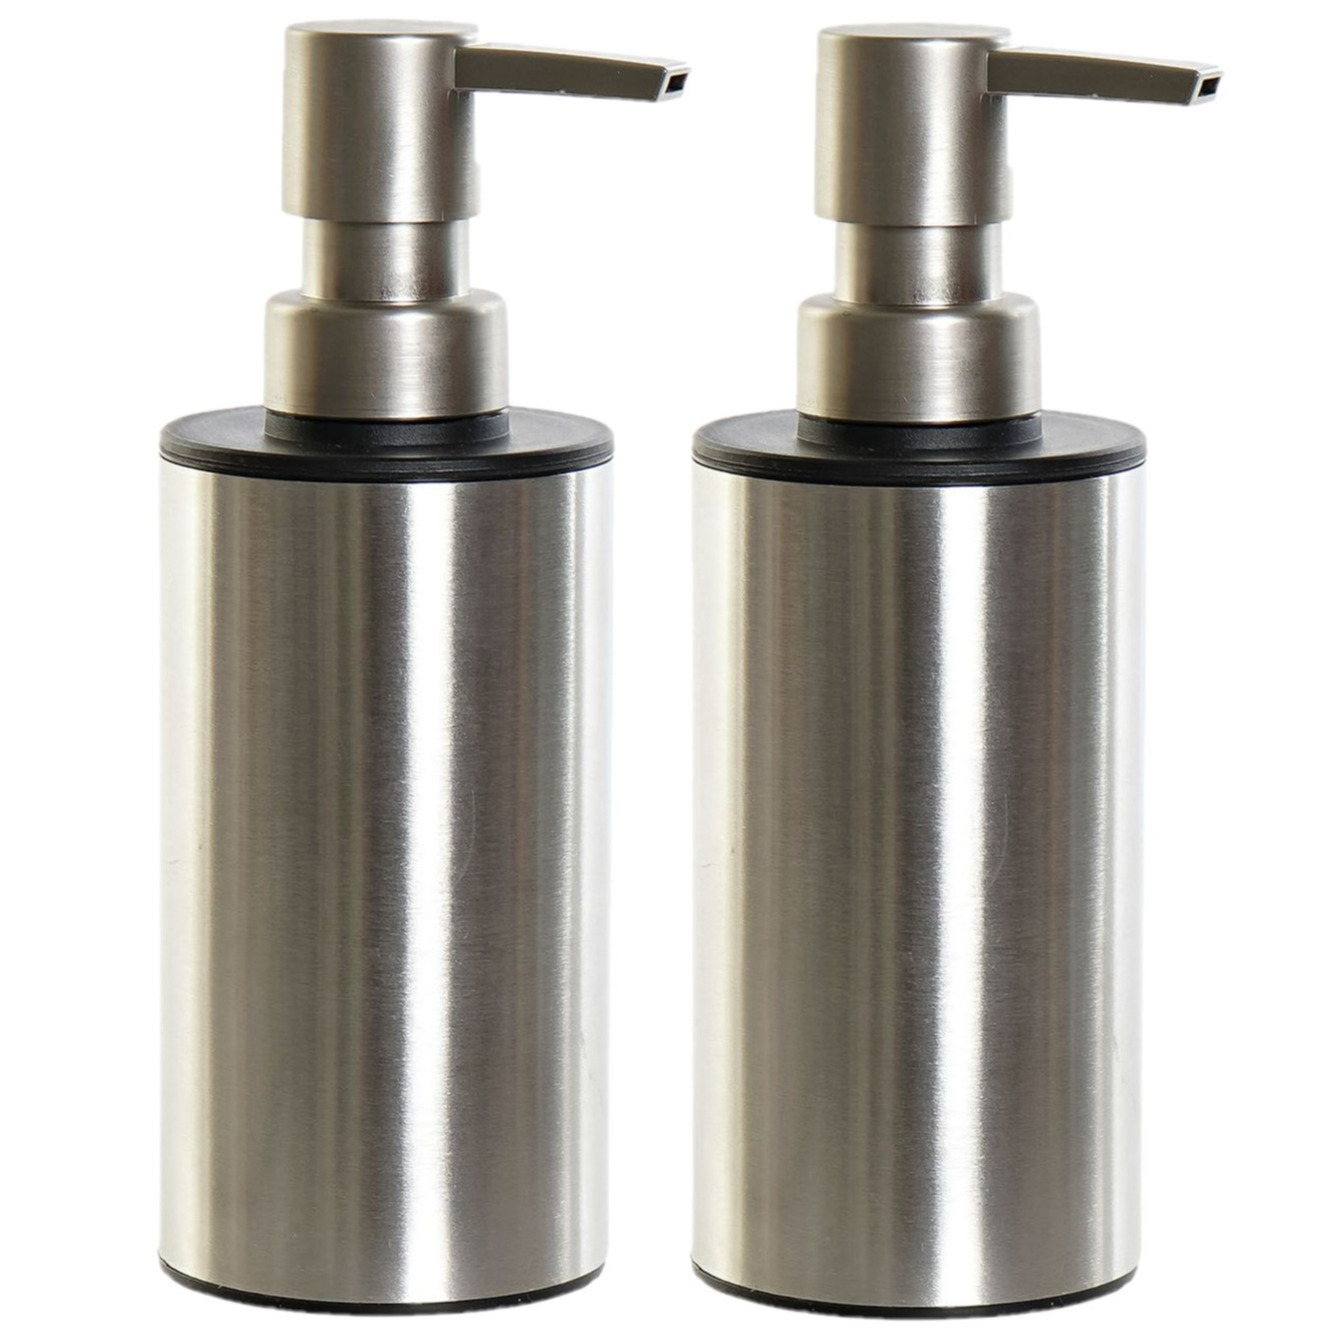 2x stuks zeeppompjes-zeepdispensers zilver RVS 300 ml